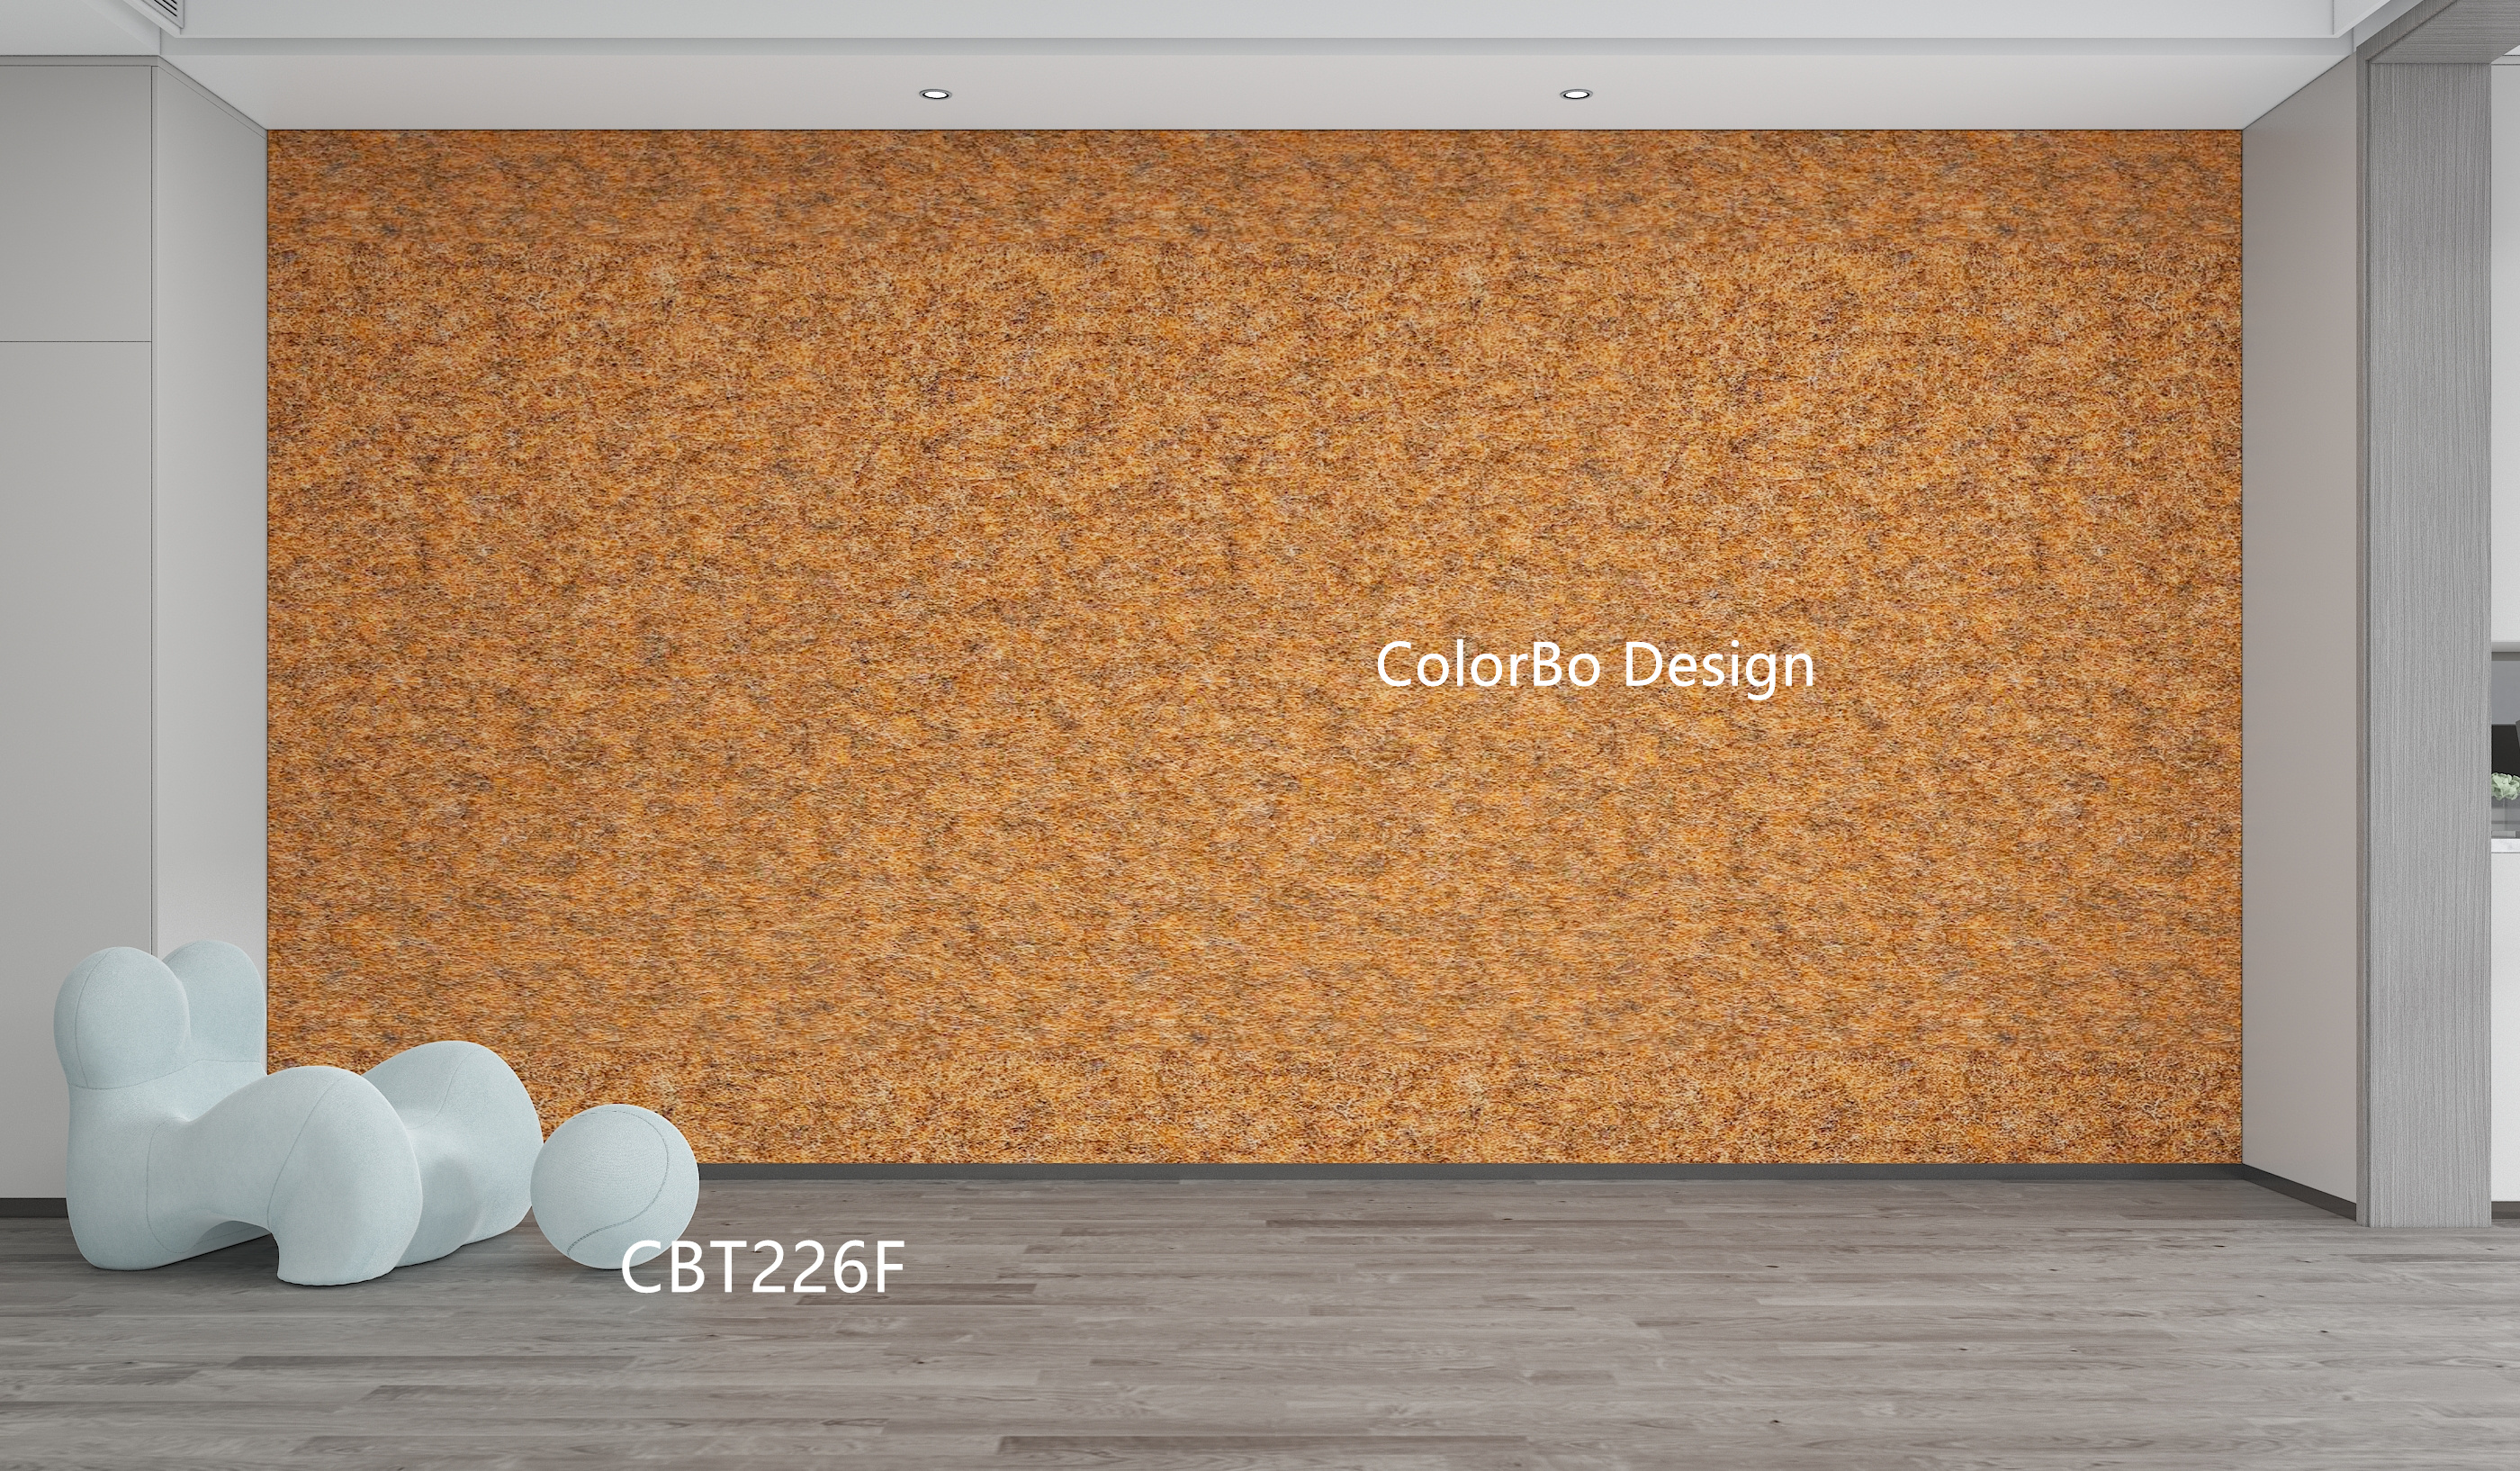 CBT226F 吸音毡板用于室内装饰时尚吊顶瓷砖